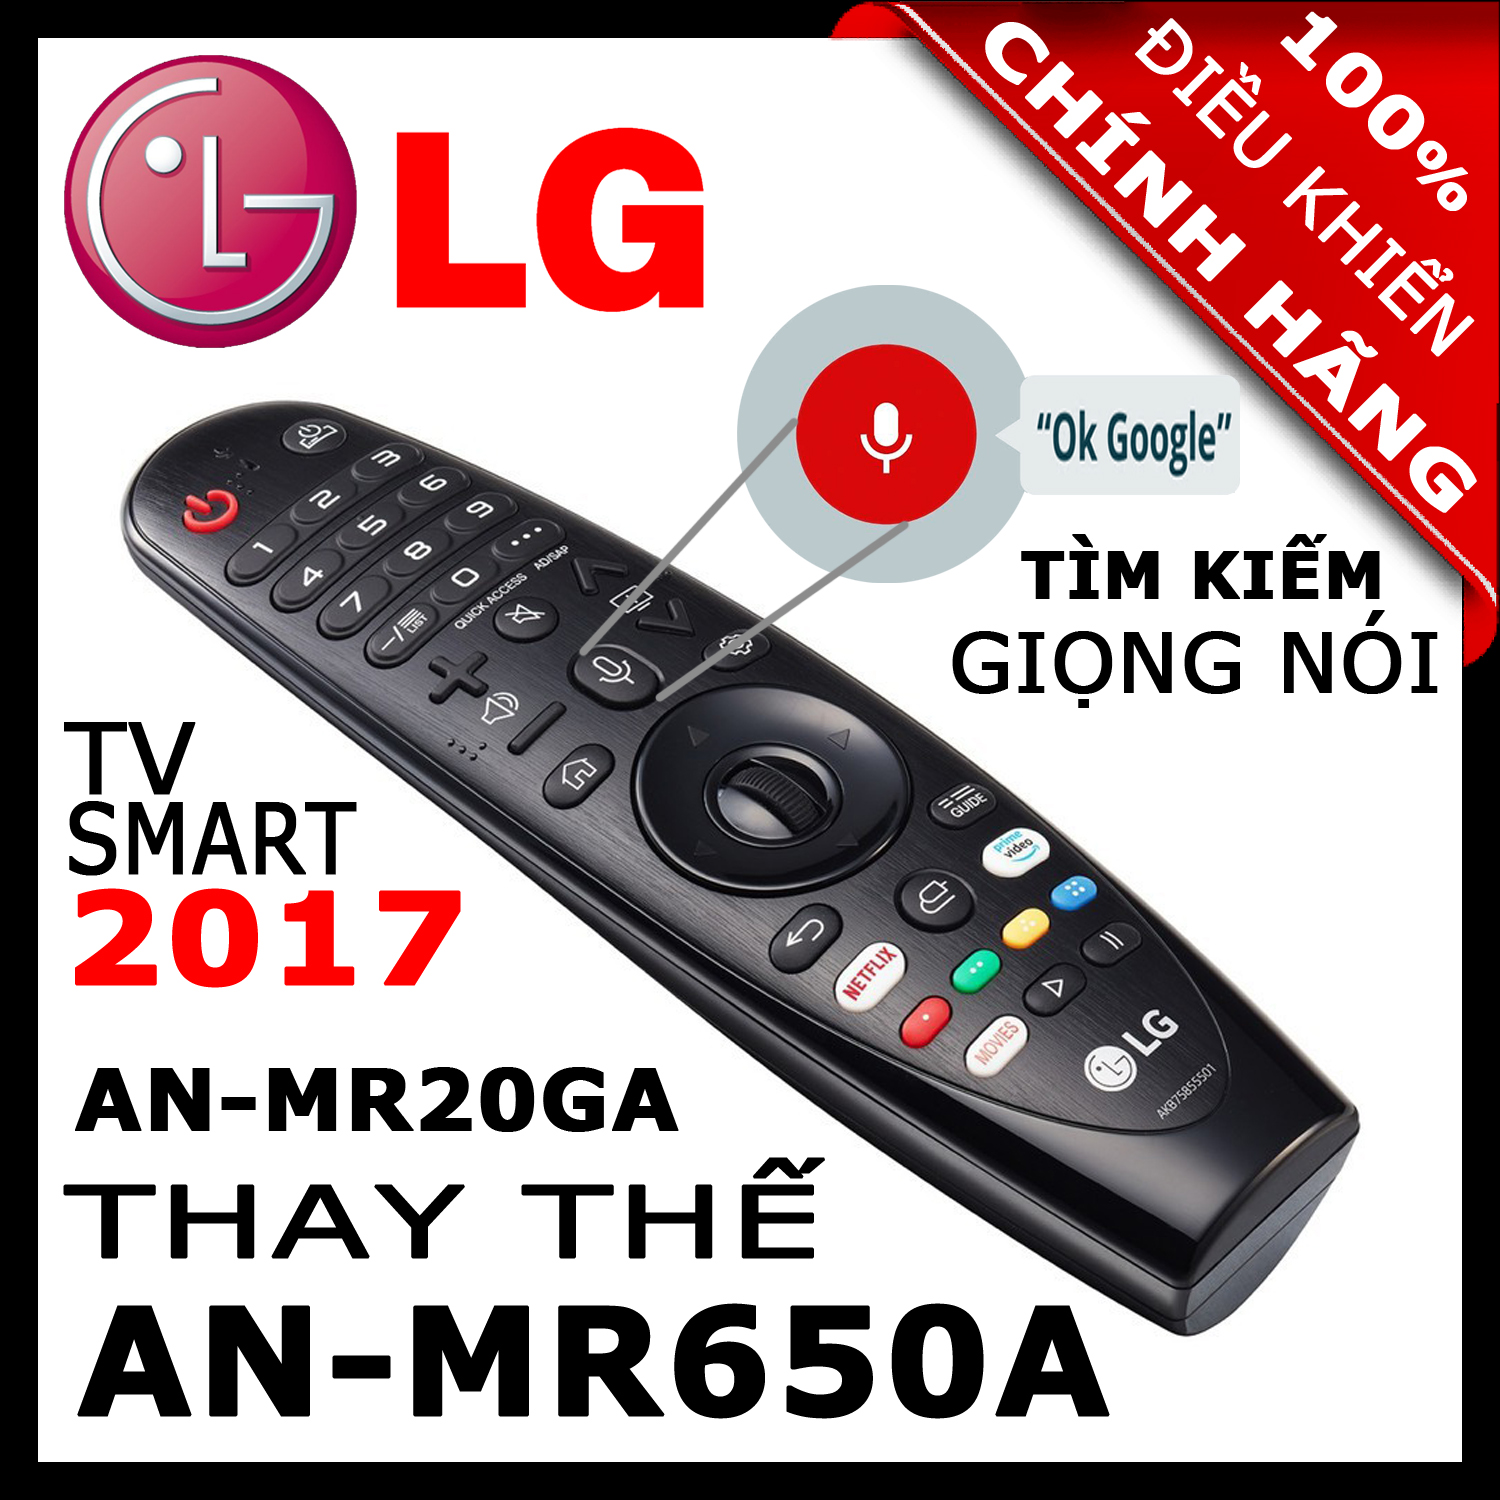 ĐIỀU KHIỂN Remote Tivi LG MR20GA thay thế MR19BA và MR18BA và MR650A có Giọng nói Chuột bay cho tivi LG 2020, 2019, 2018, 2017 Magic Remote AN-MR20GA mã số AKB75855501 HÀNG XỊN. Remote cho tivi LG sản xuất năm 2017